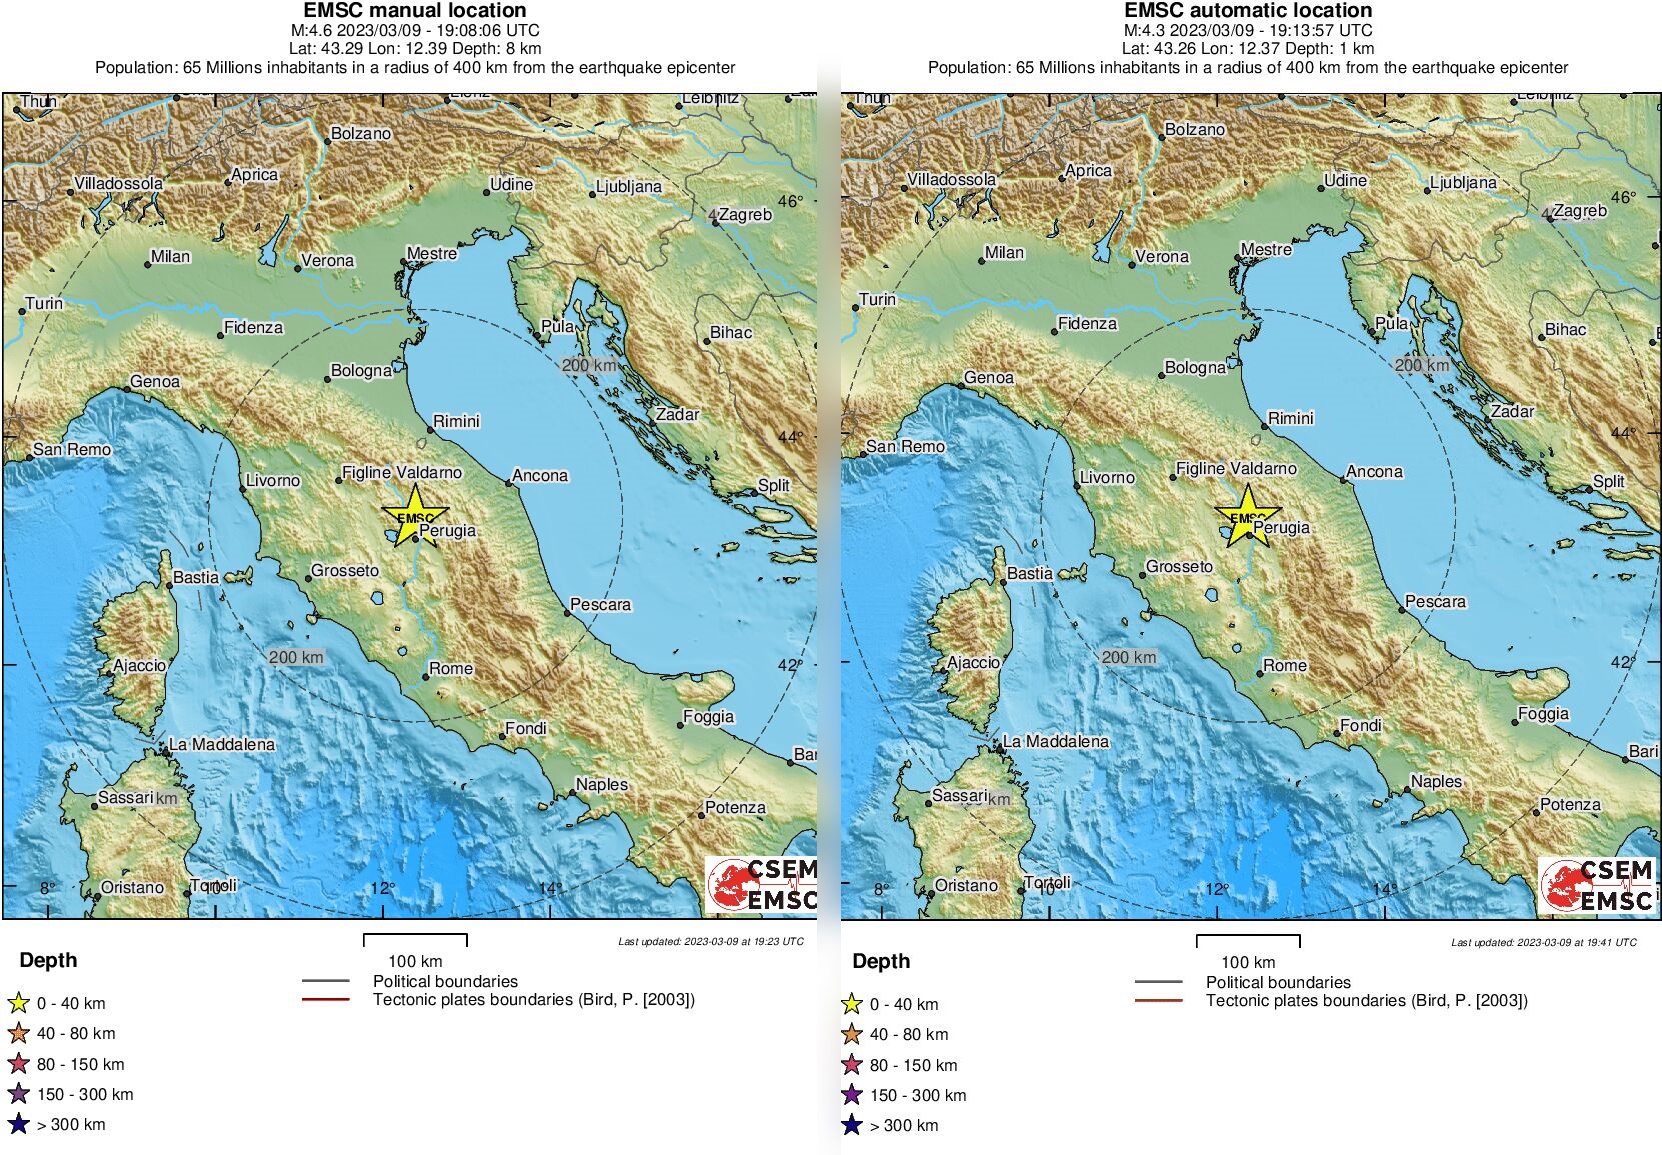 Ιταλία: Νέος σεισμός 4,6 Ρίχτερ στην Περούτζια – Τρεις δυνατές δονήσεις μέσα σε 4 ώρες